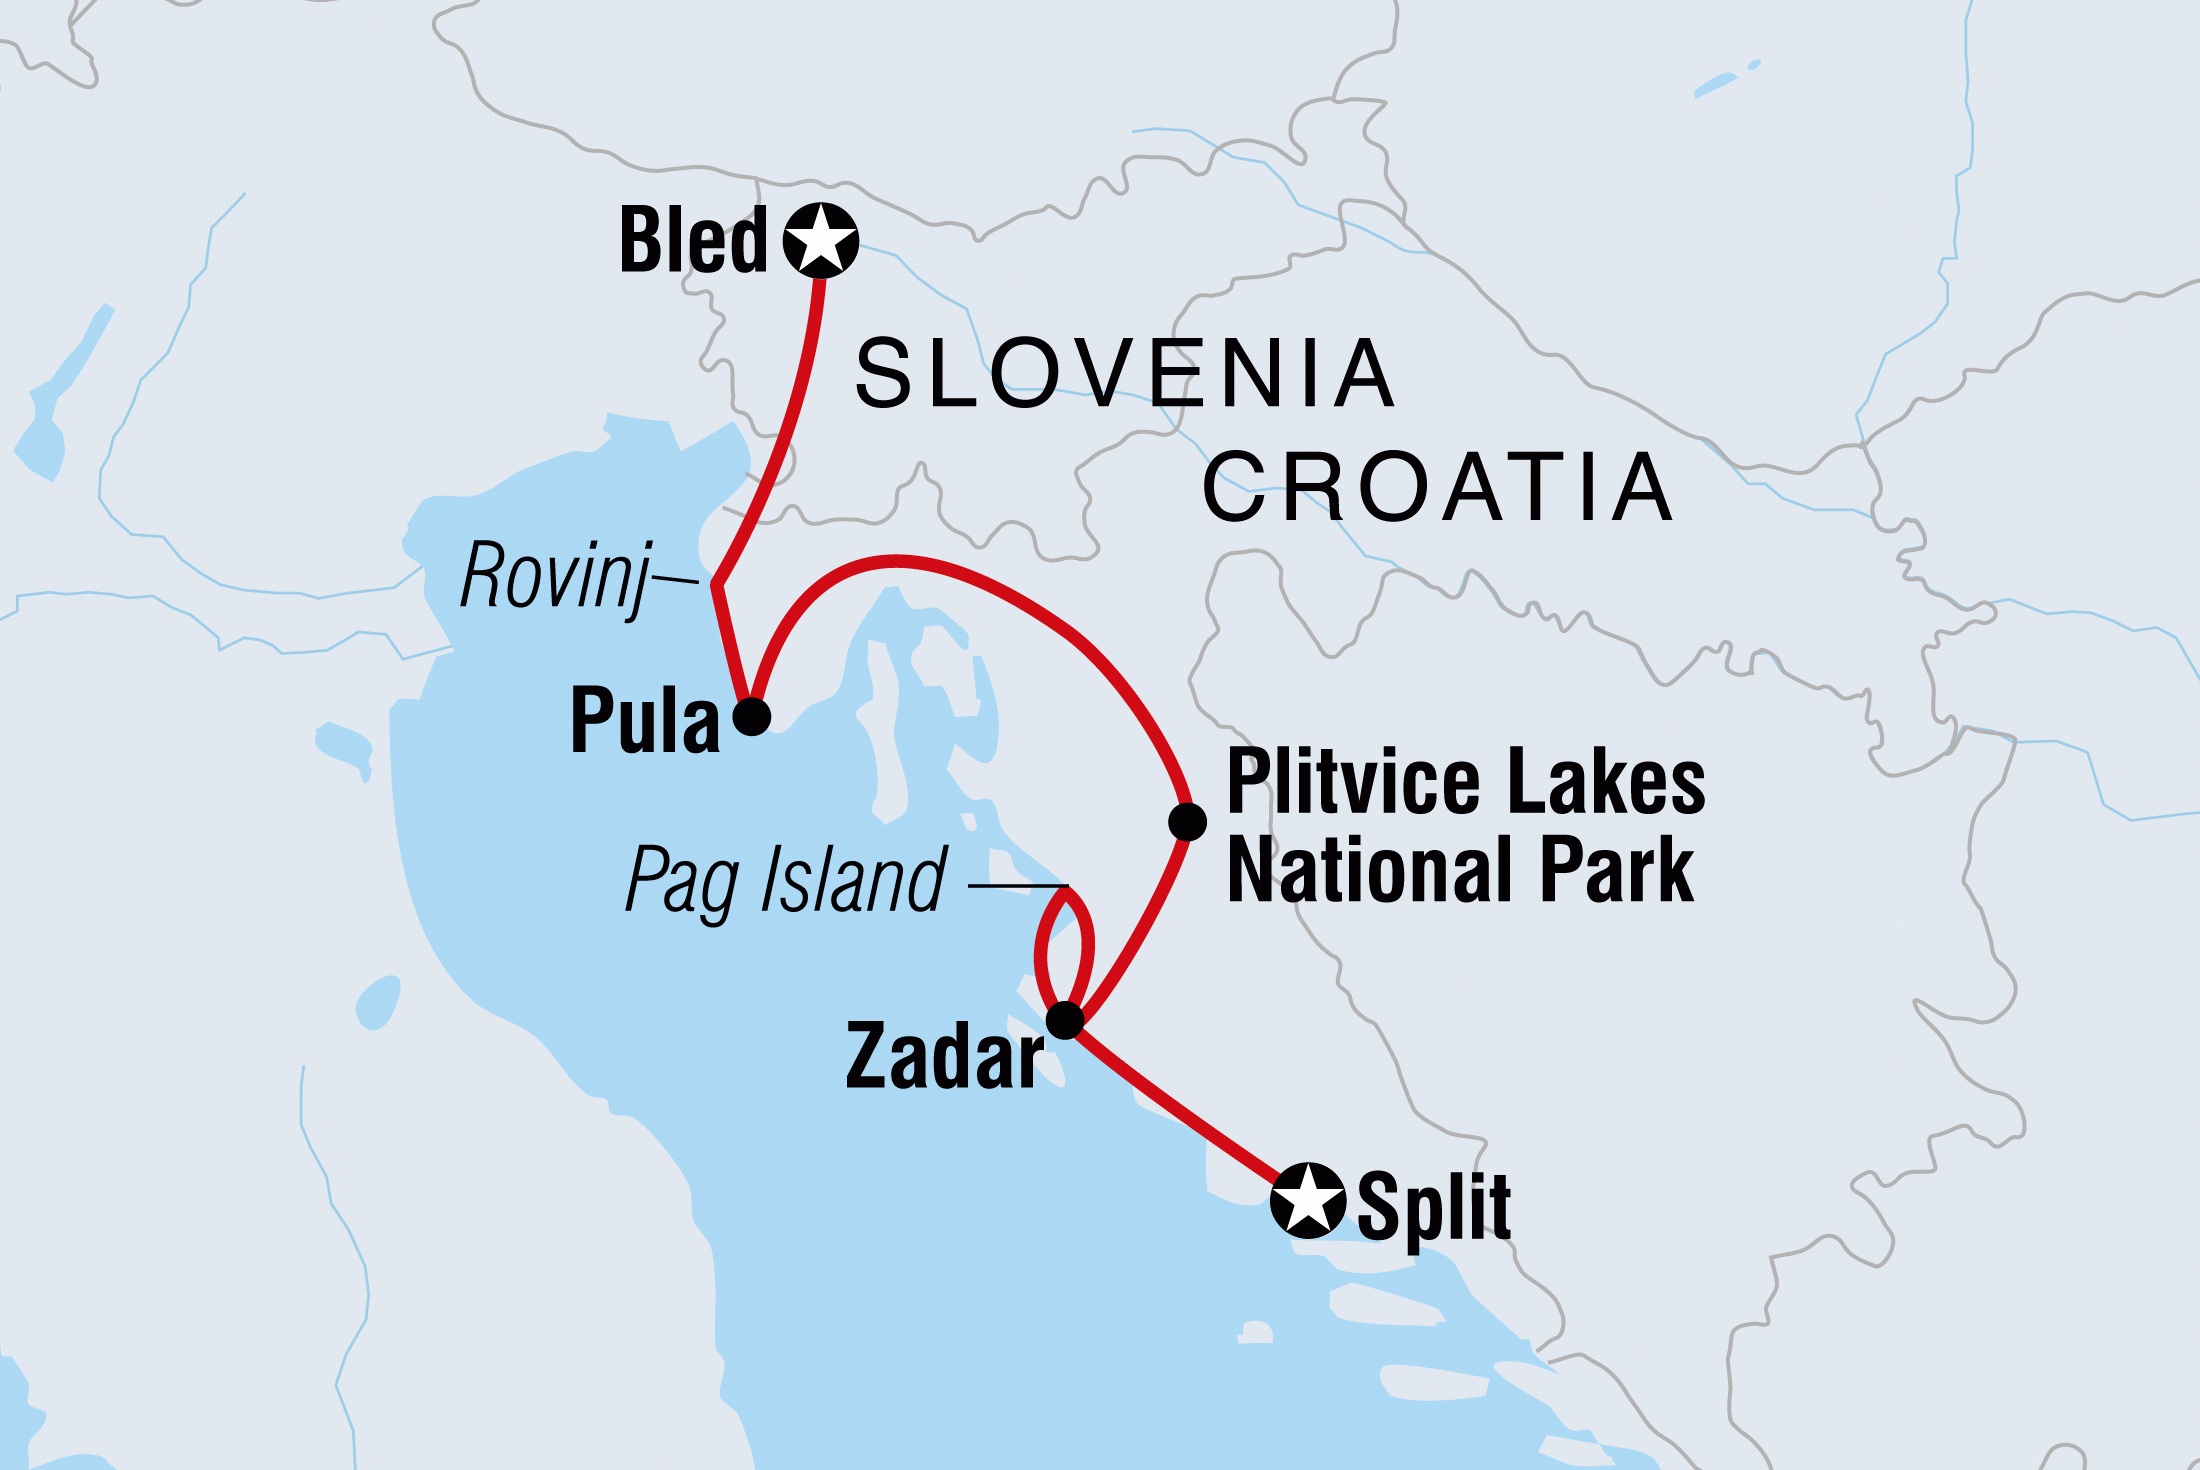 Map of Croatia & Slovenia including Croatia and Slovenia